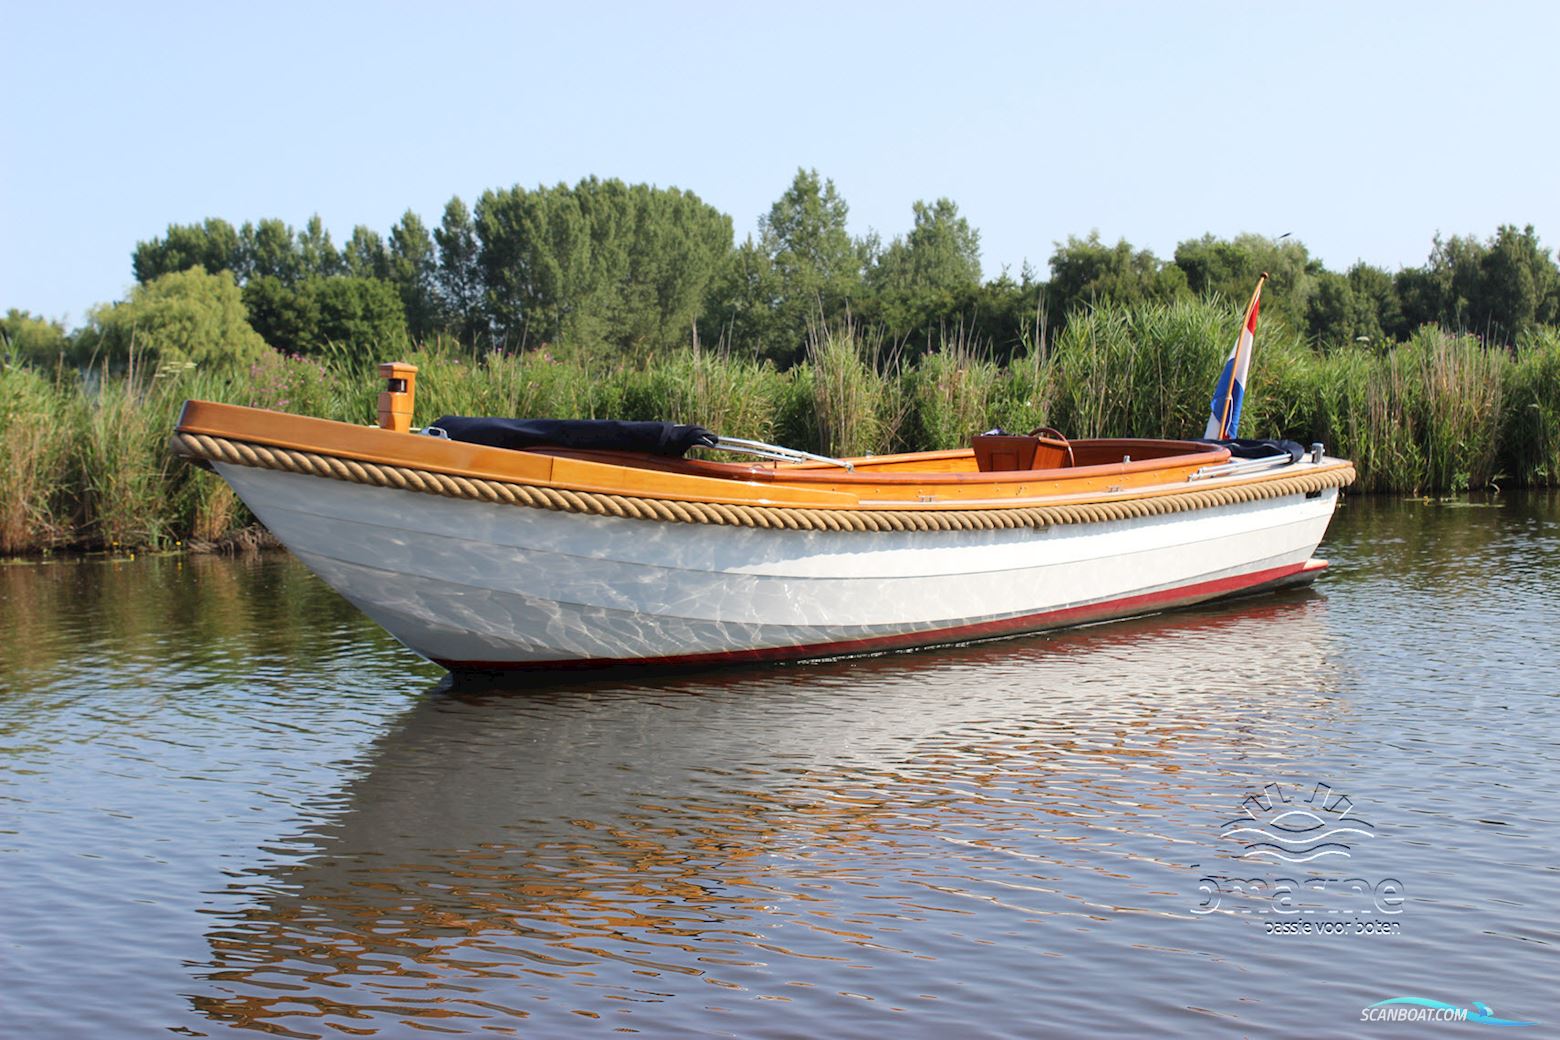 Roosemalen Vlet 770 Motorbåt 2008, med Lombardini motor, Holland